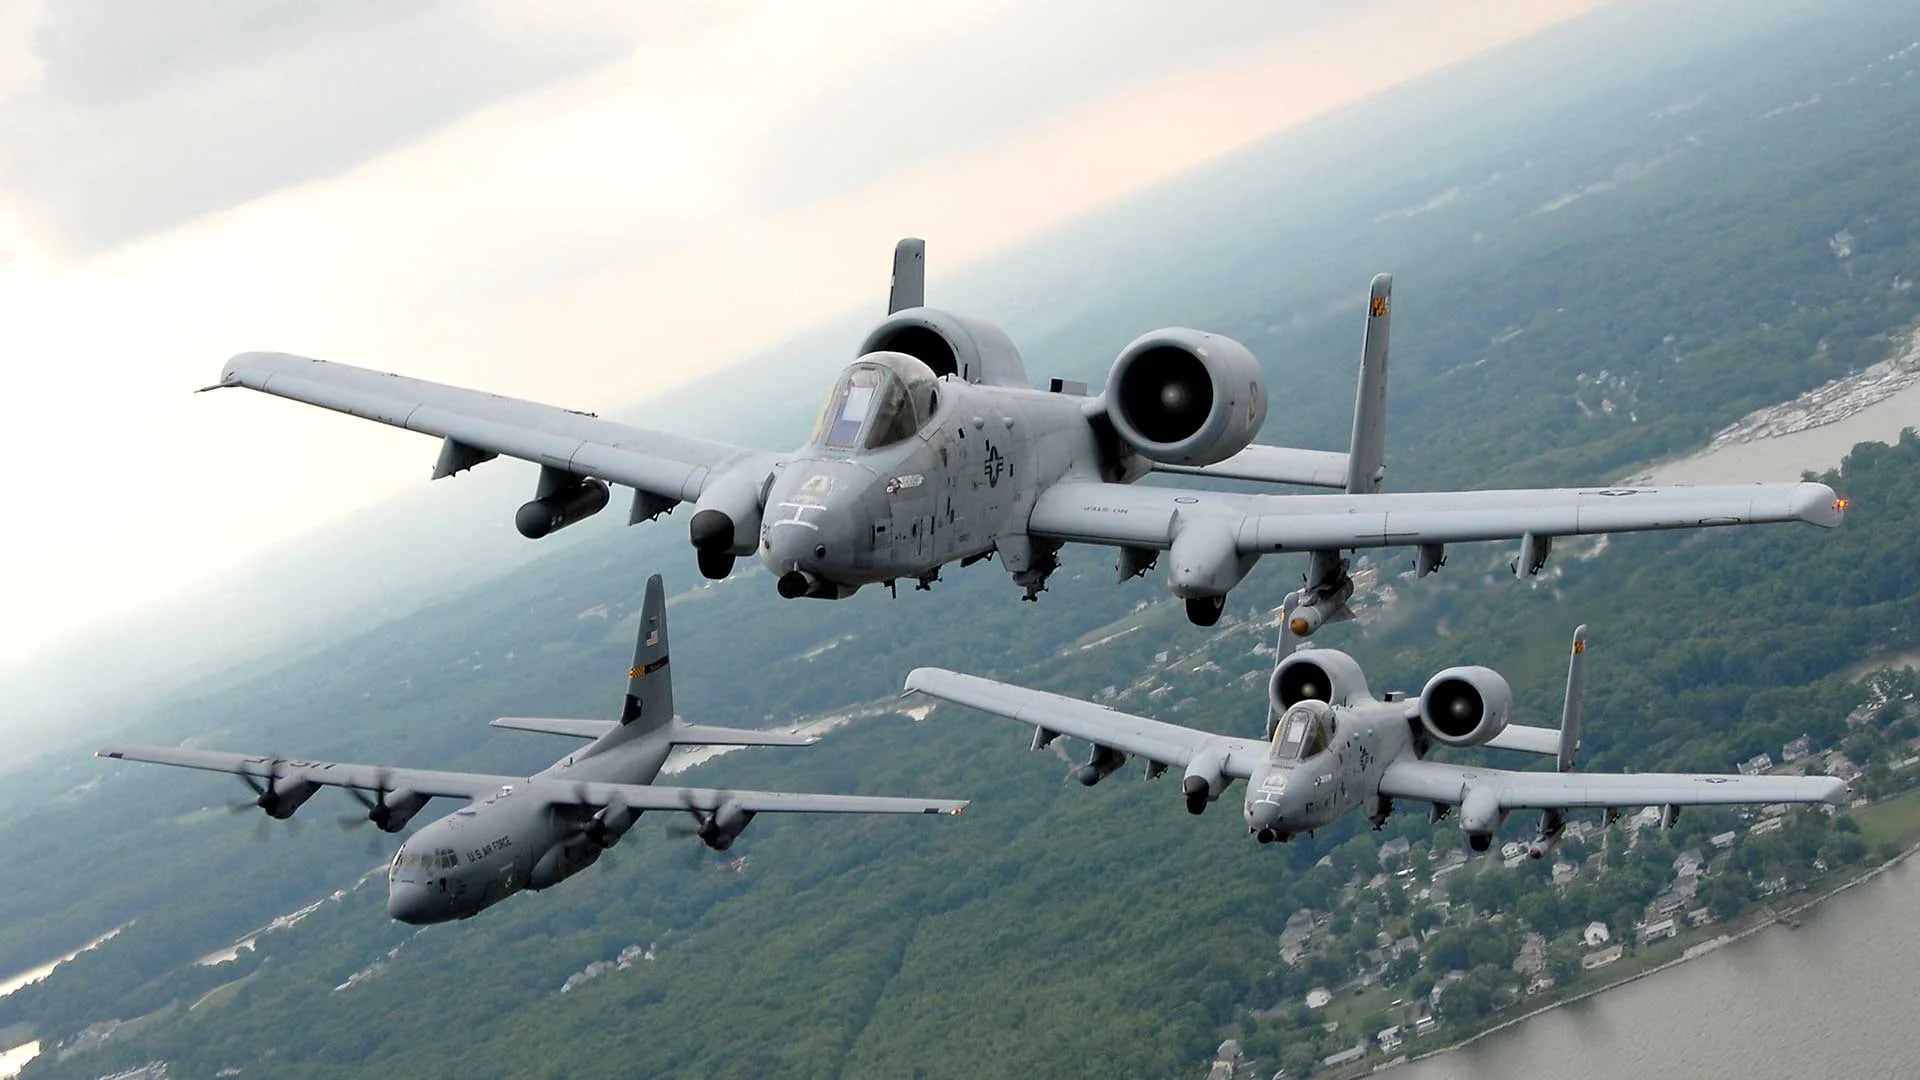 El ataque aéreo fue ordenado por el departamento de Defensa de los Estados Unidos sin aprobación directa de Donald Trump y en un área recientemente designada “zona de guerra”